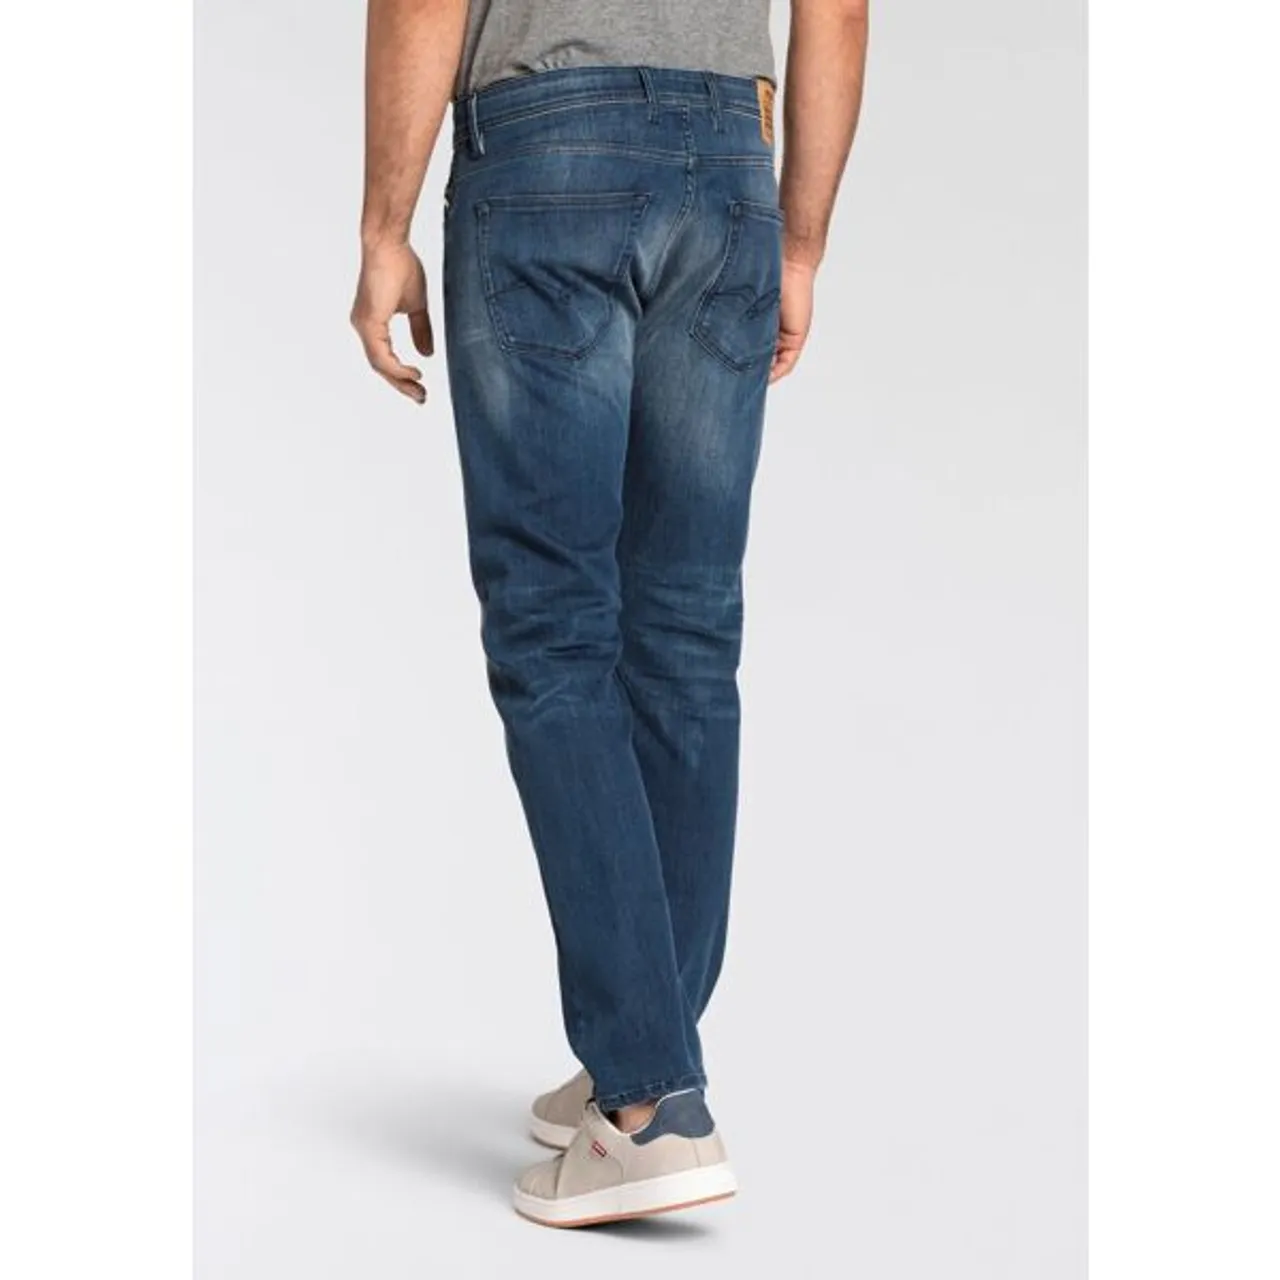 Straight-Jeans REPLAY "GROVER" Gr. 33, Länge 30, blau (blue medium a783) Herren Jeans Straight Fit in vielen verschiedenen Waschungen, mit Stretch